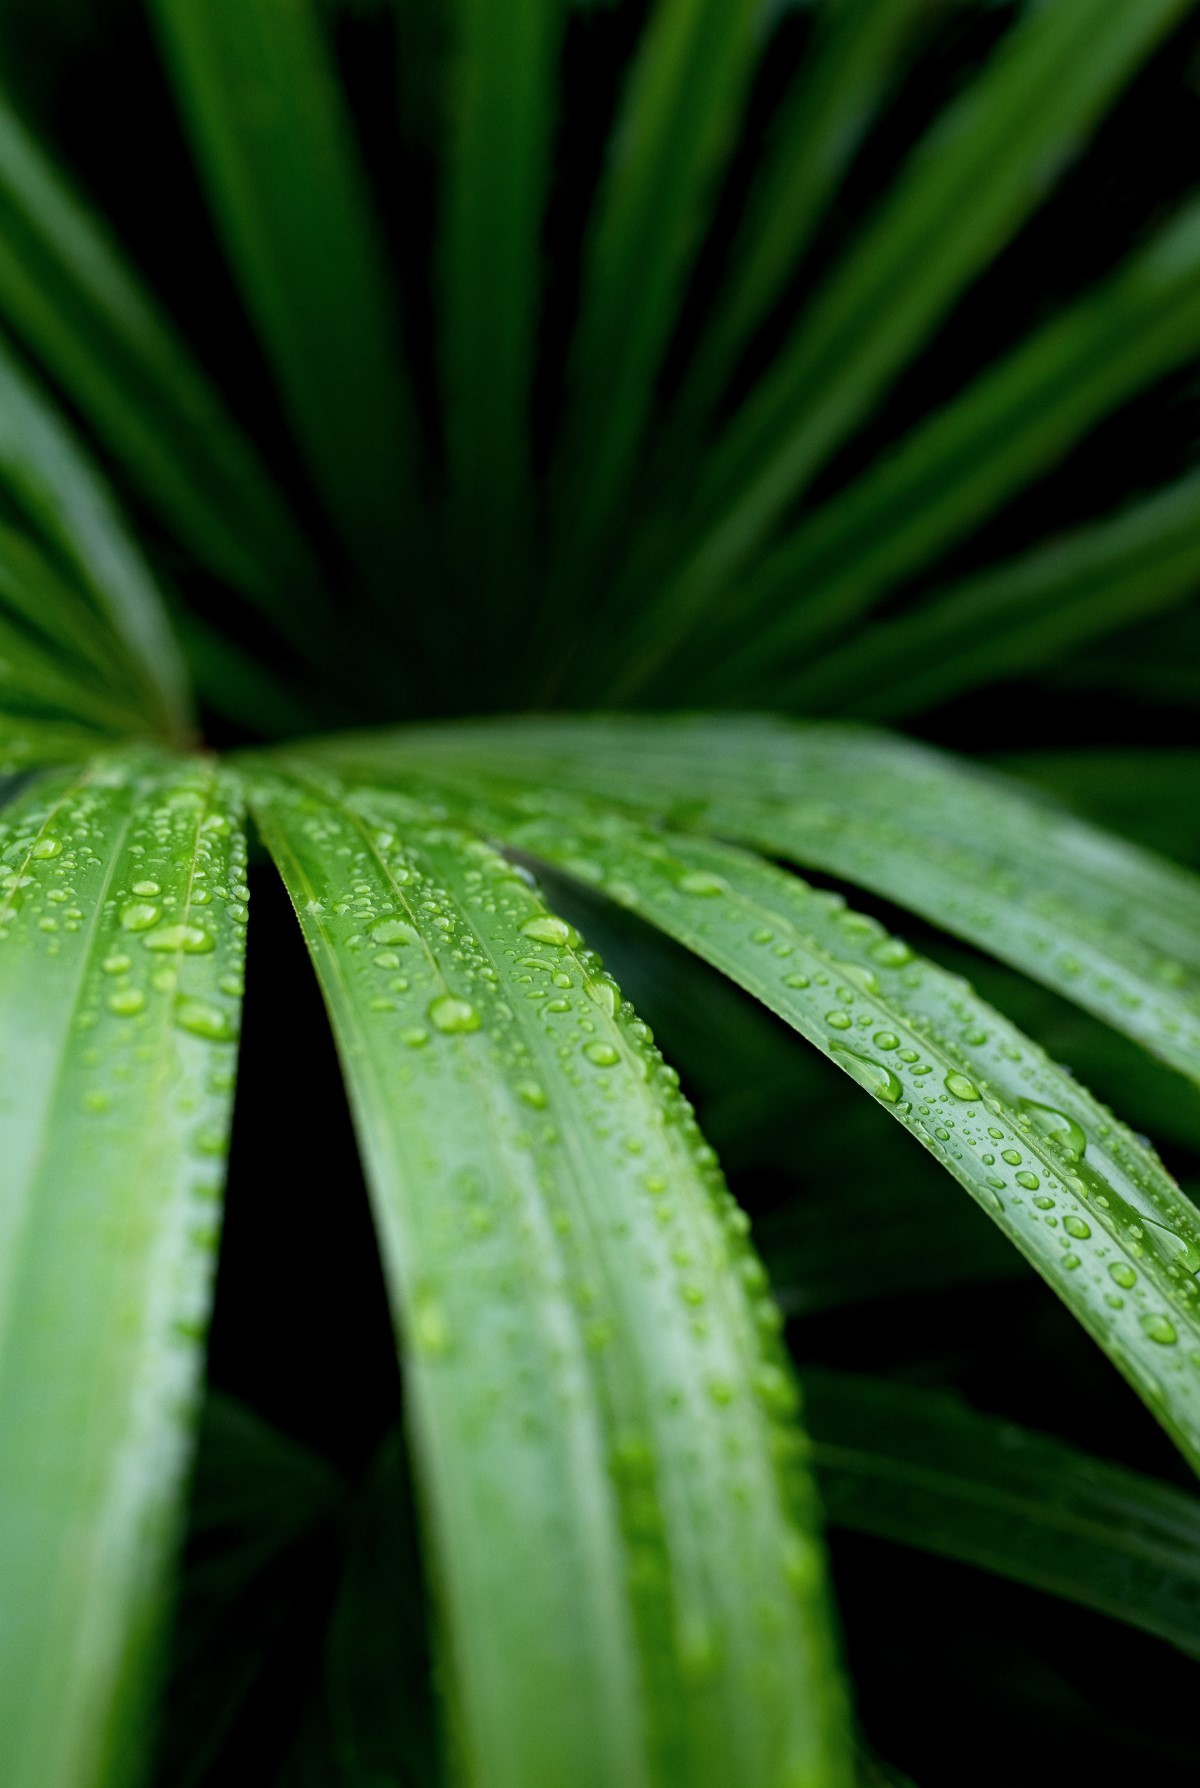 A palmeira-ráfis possui múltiplos estipes – caules – alongados e revestidos por uma fibra marrom bem rústica (Foto: Unsplash / David Clode / CreativeCommons )